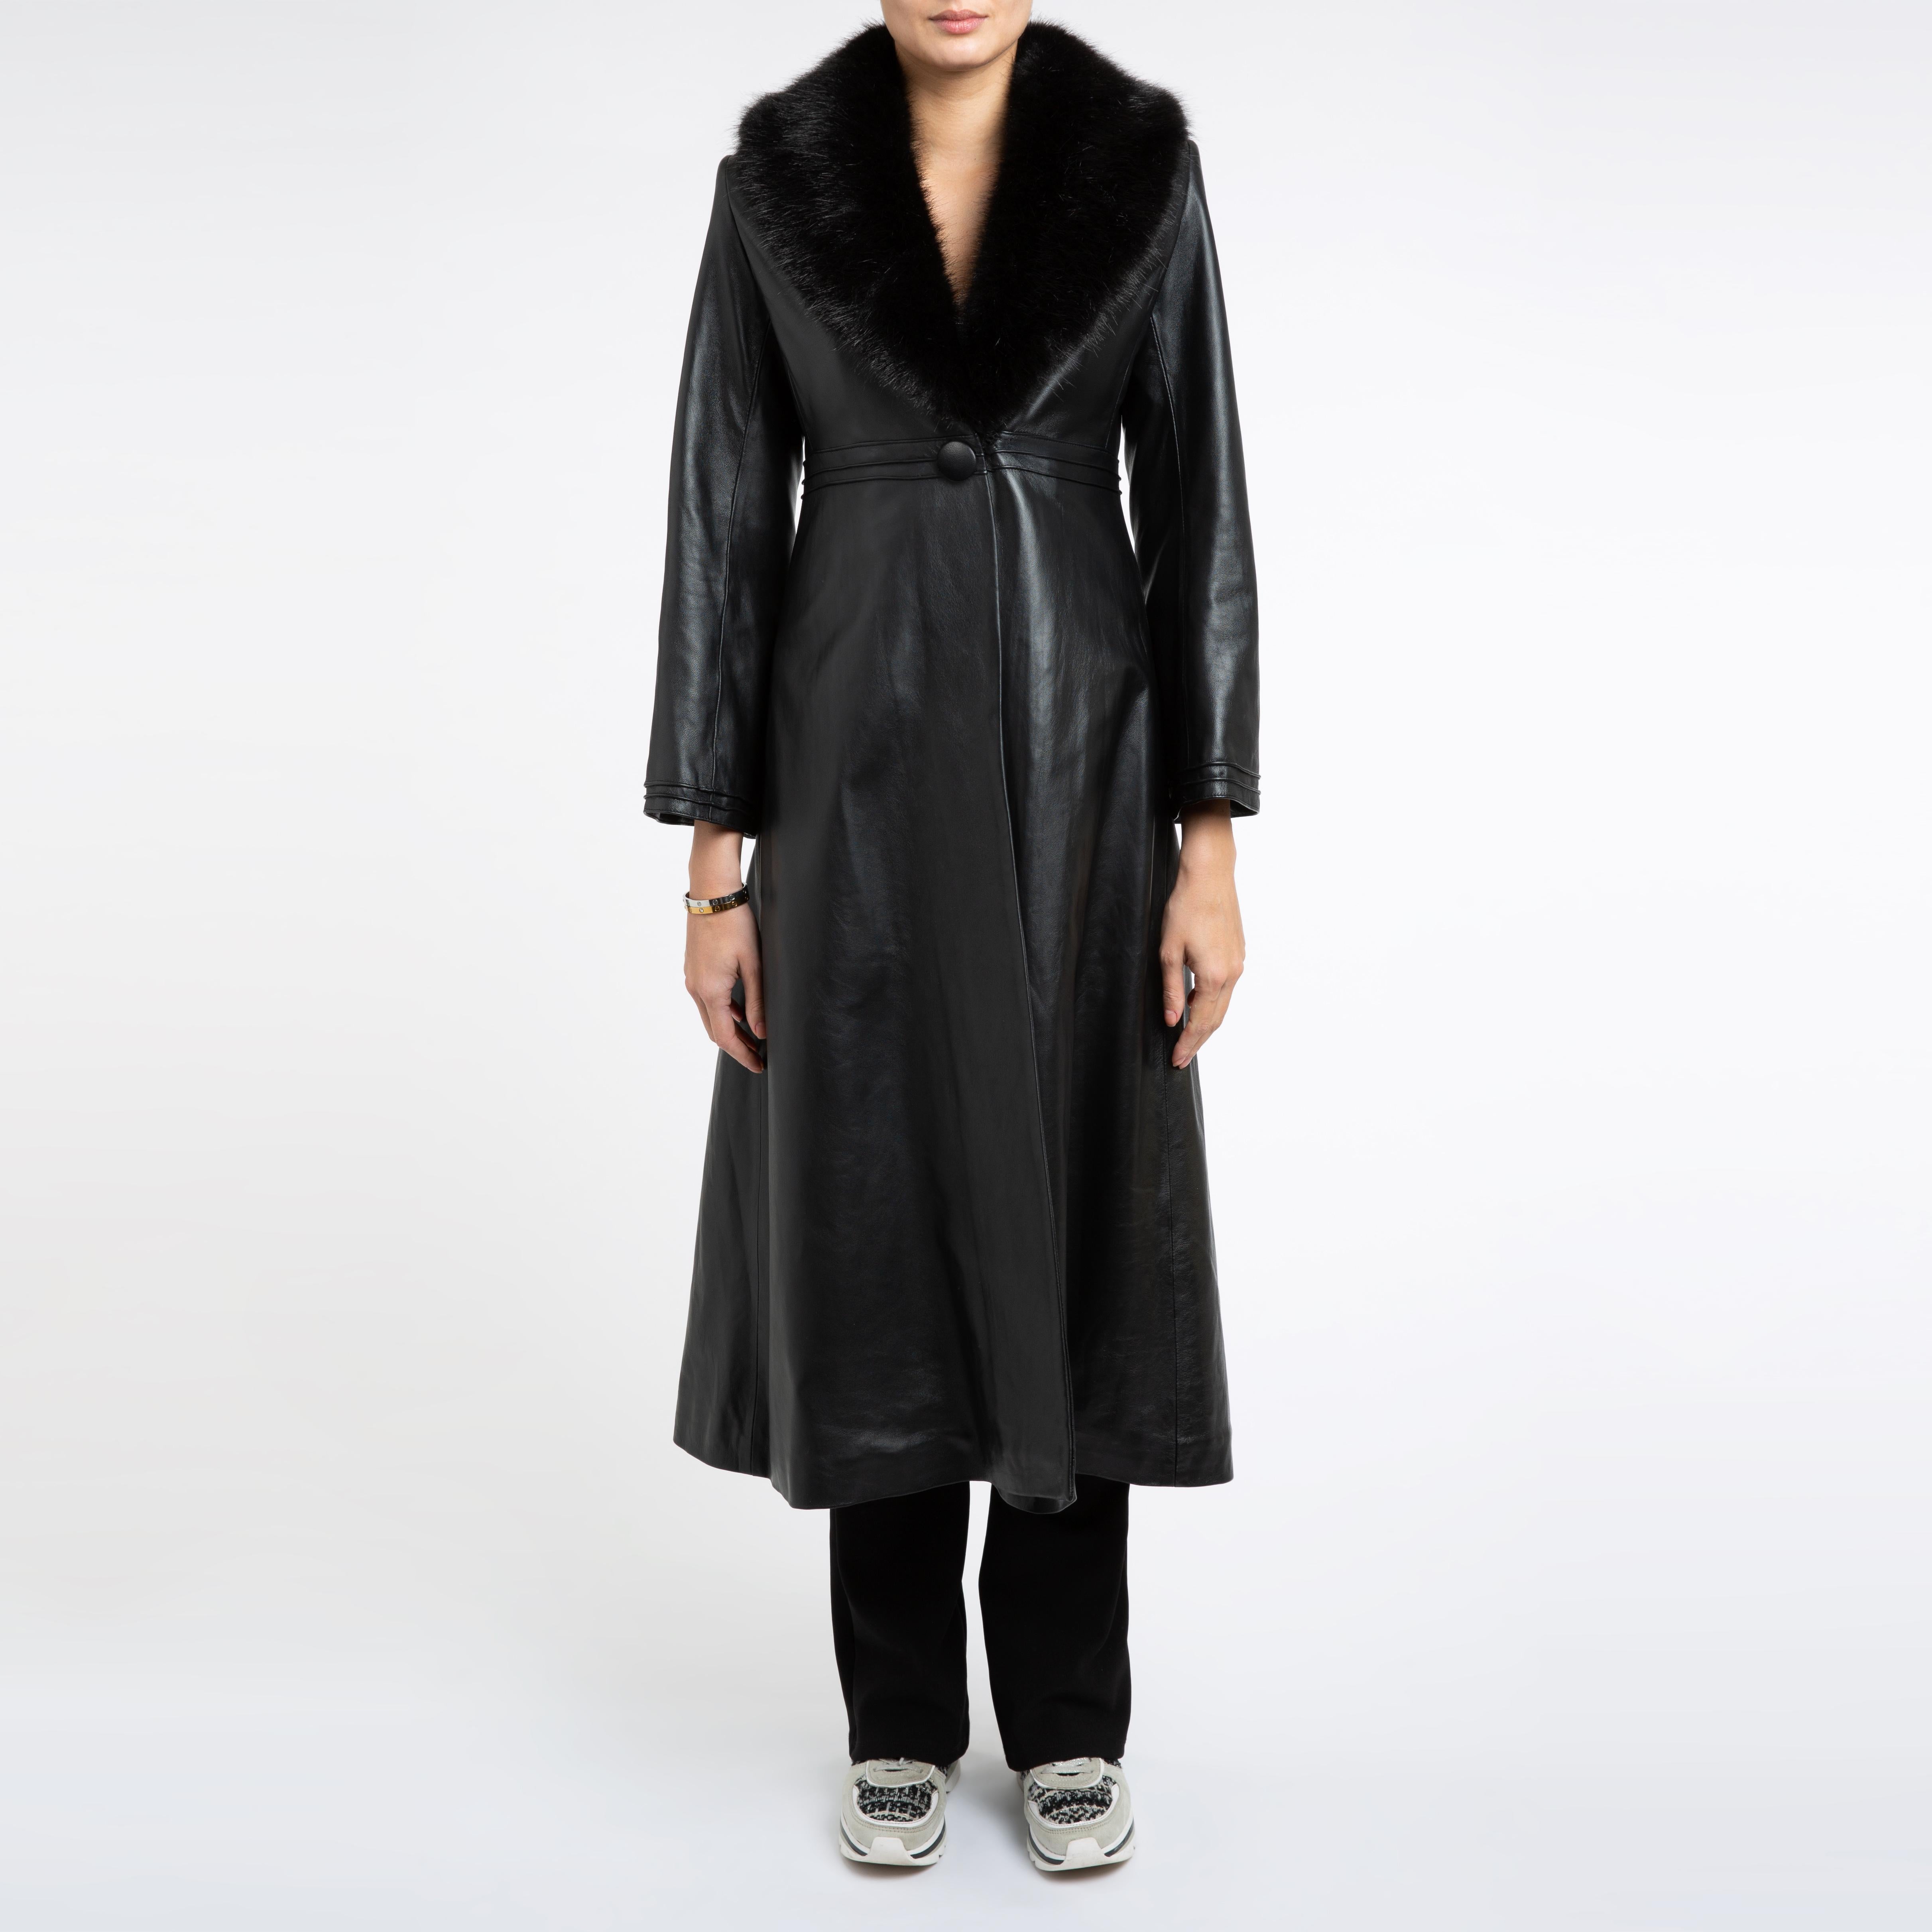 Verheyen London Edward Leather Coat with Faux Fur Collar in Black - Size uk 8 14